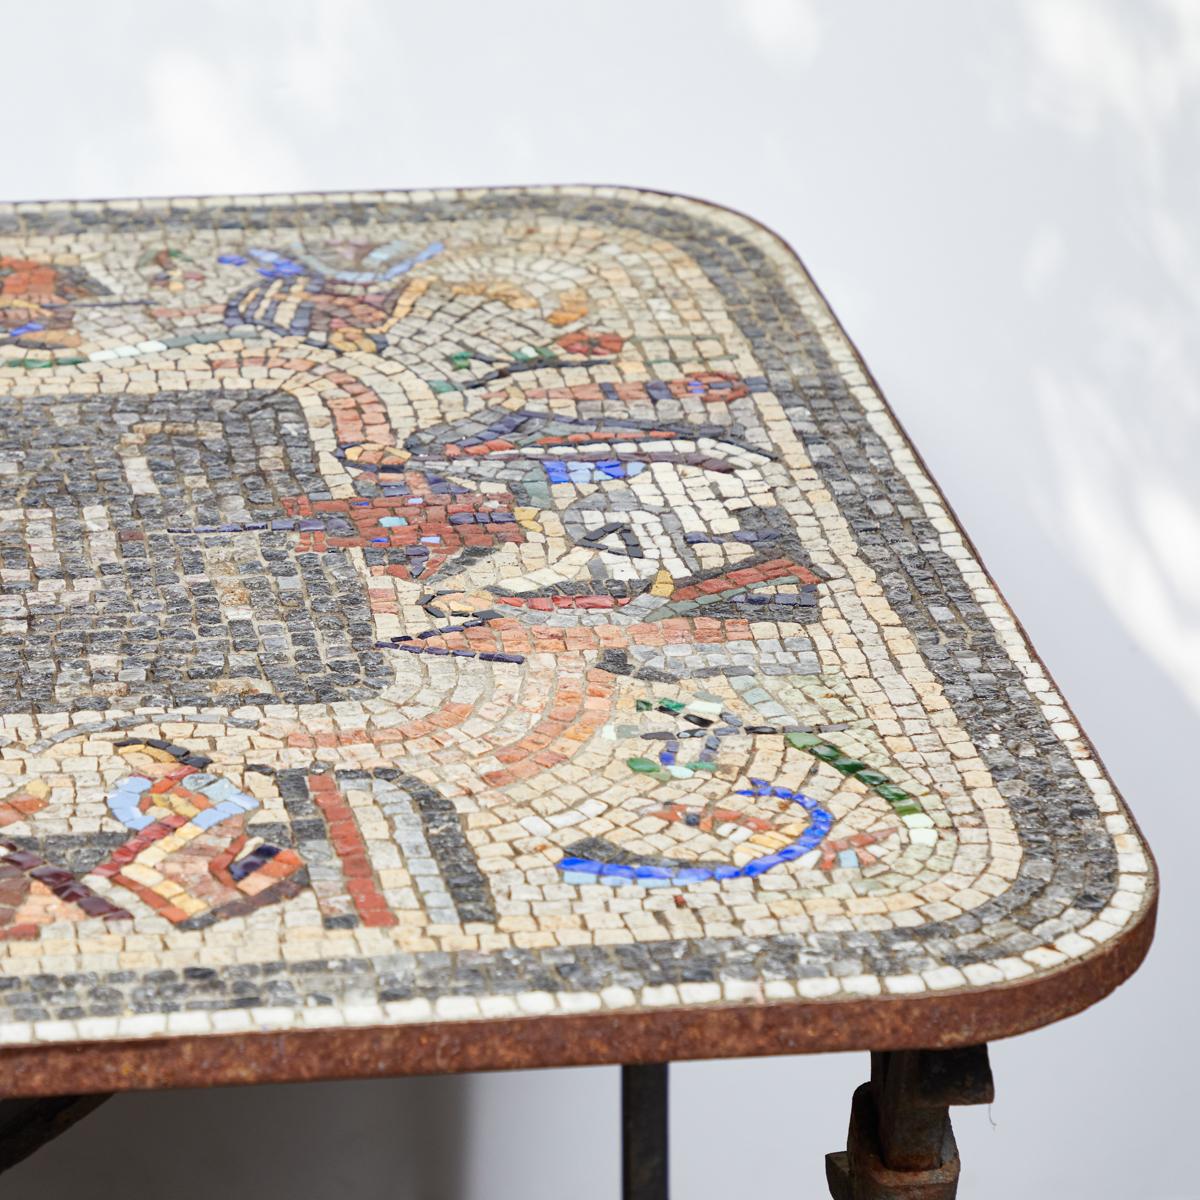 Dieser Eisentisch aus dem England der Jahrhundertwende hat eine wunderschöne Mosaikplatte. Es zeigt eine Reihe von figürlichen Darstellungen in einem Ring, der die Mitte des Tisches umgibt. Dieses Beispiel eignet sich hervorragend als Cocktail- oder